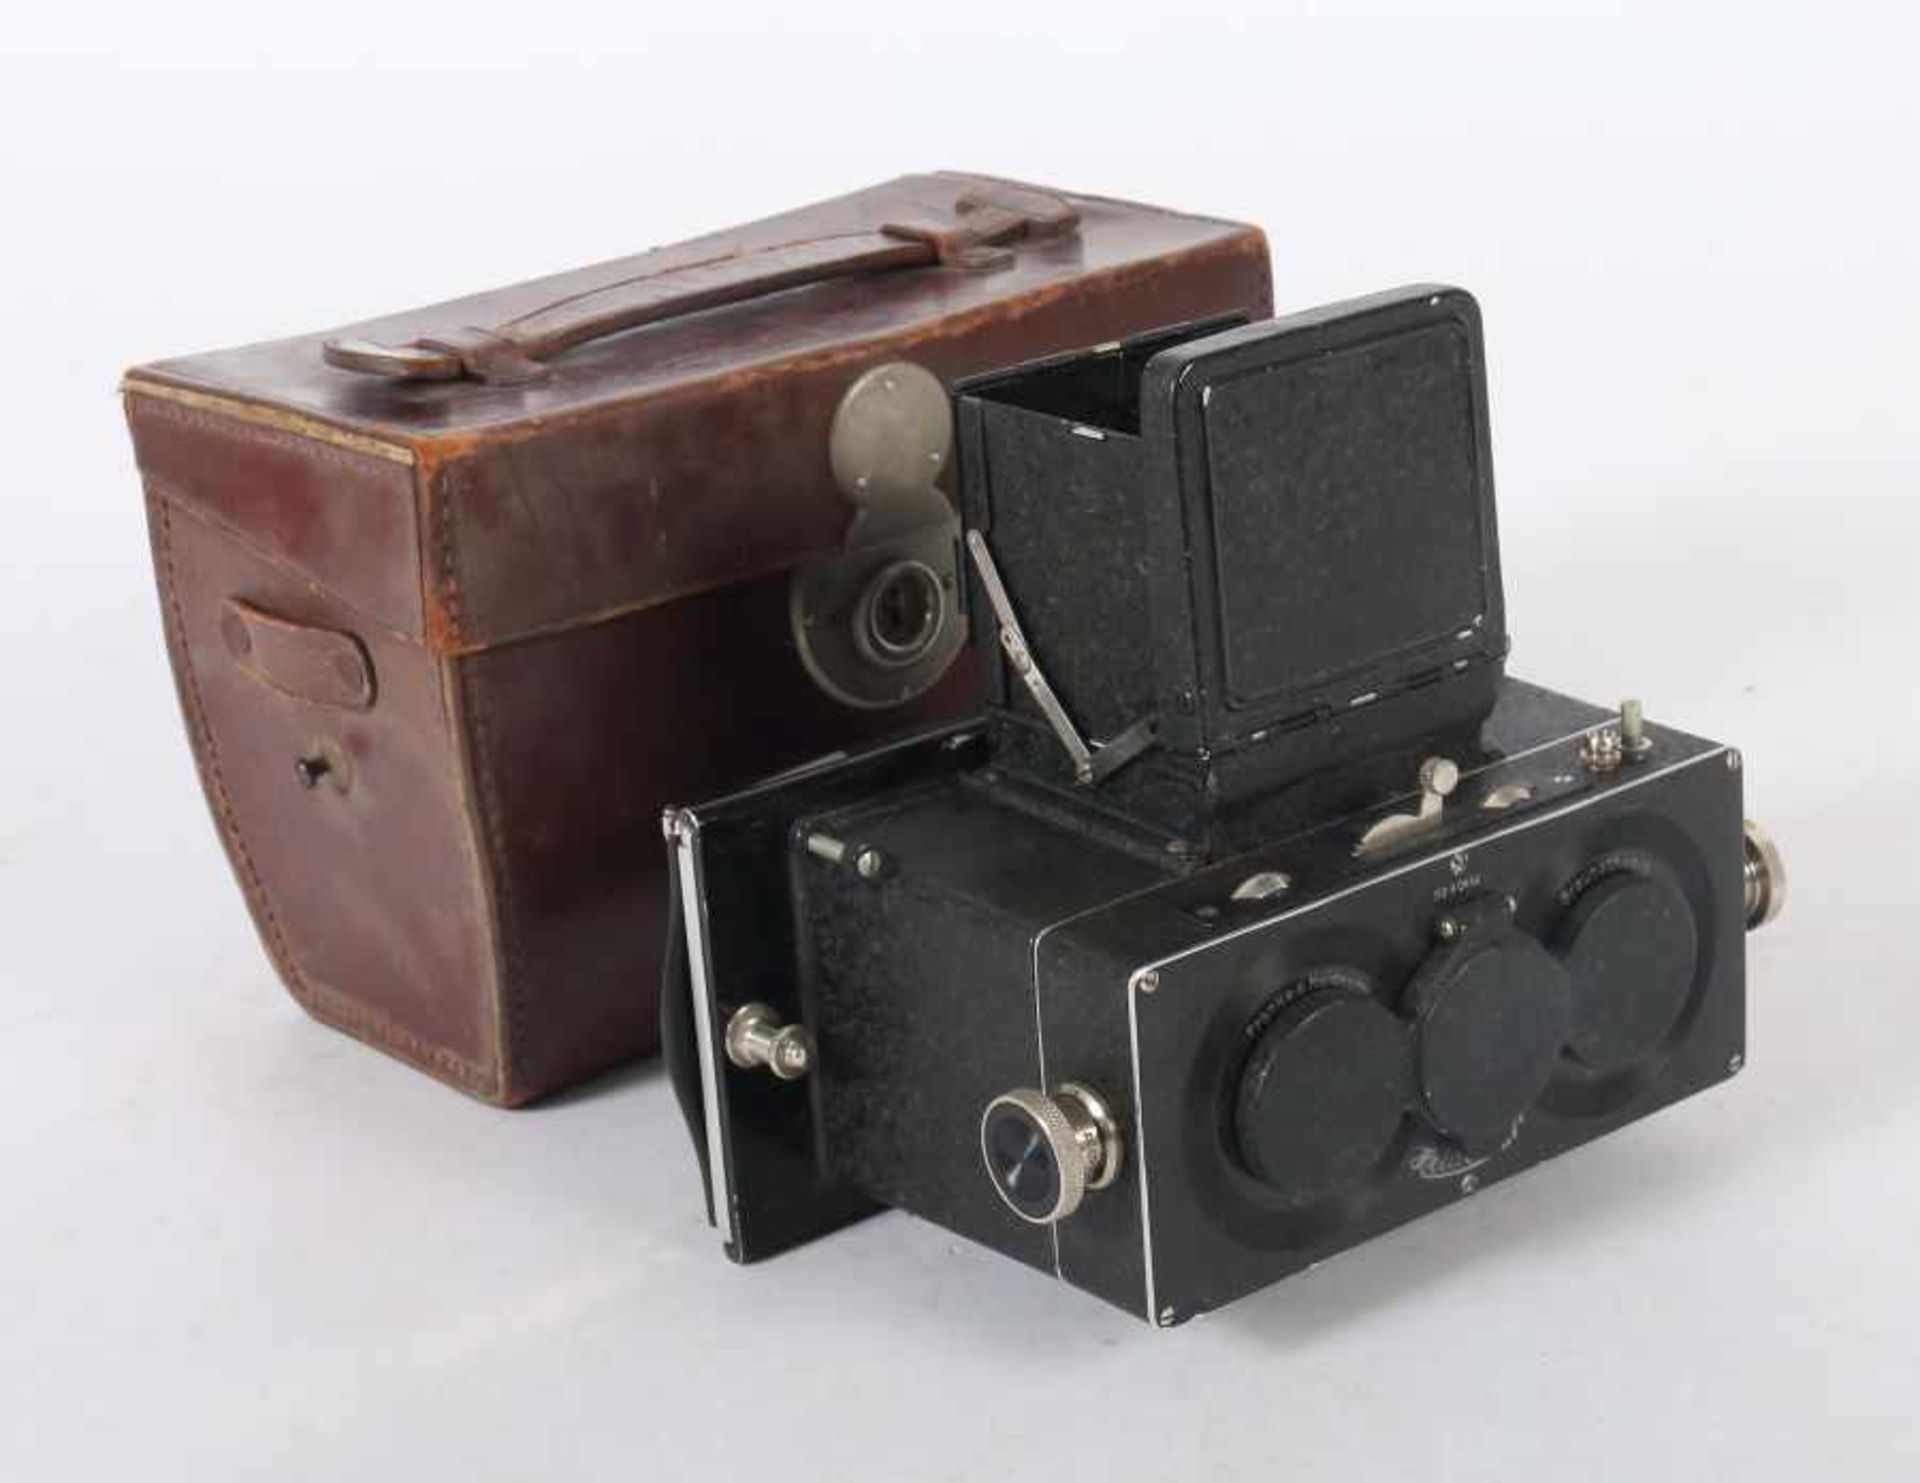 Stereokamera "Heidoscop"Franke & Heidecke, Braunschweig, um 1930/35, Stereokamera für Platten im - Bild 2 aus 2